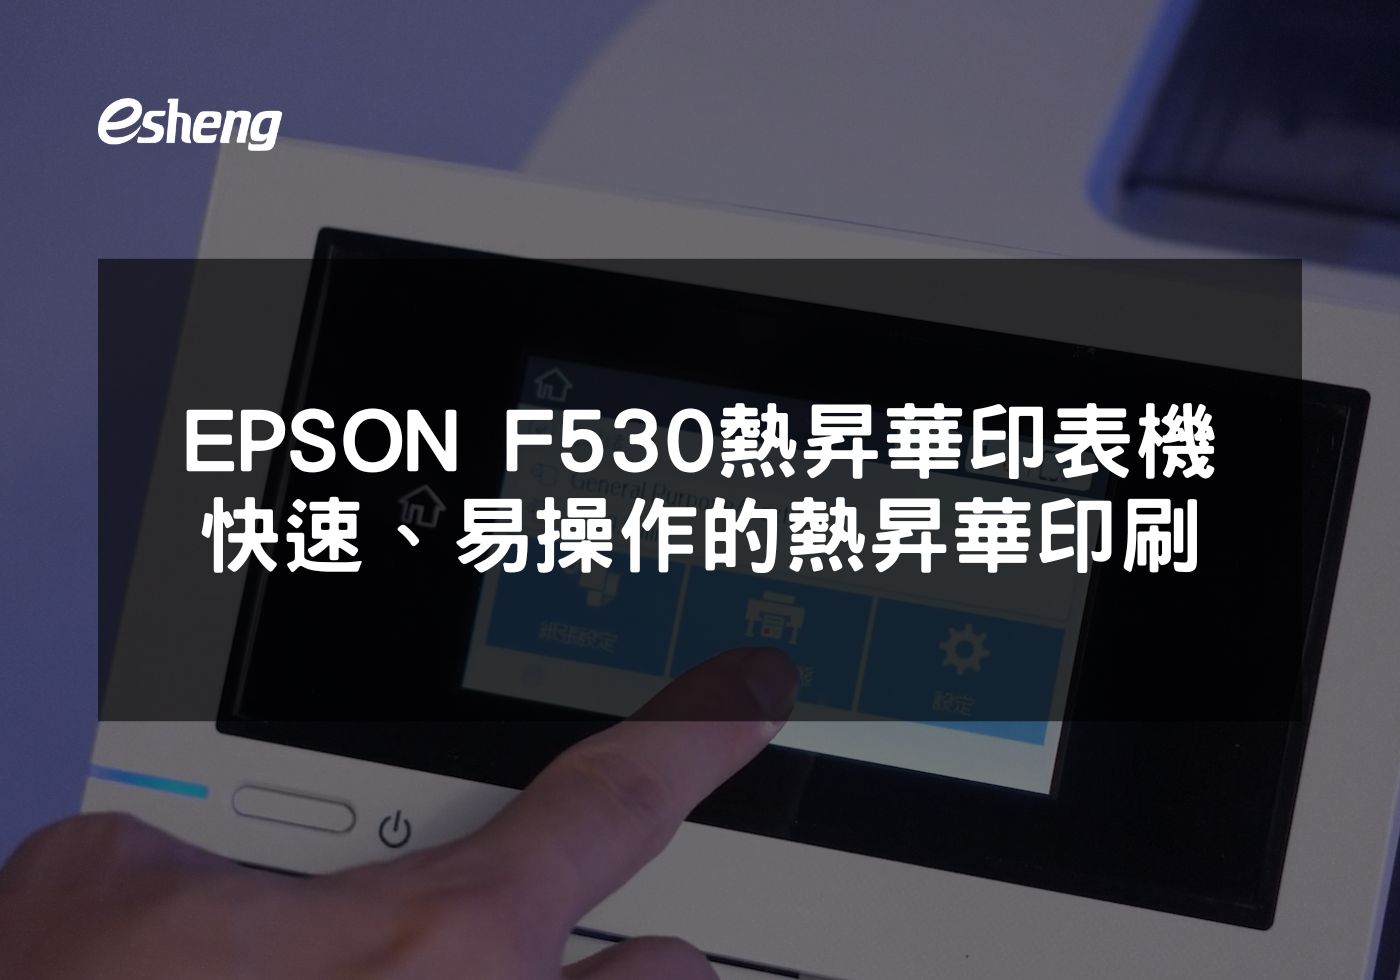 閱讀更多文章 EPSON F530熱昇華印表機 高品質、快速、易操作的熱昇華印刷解決方案